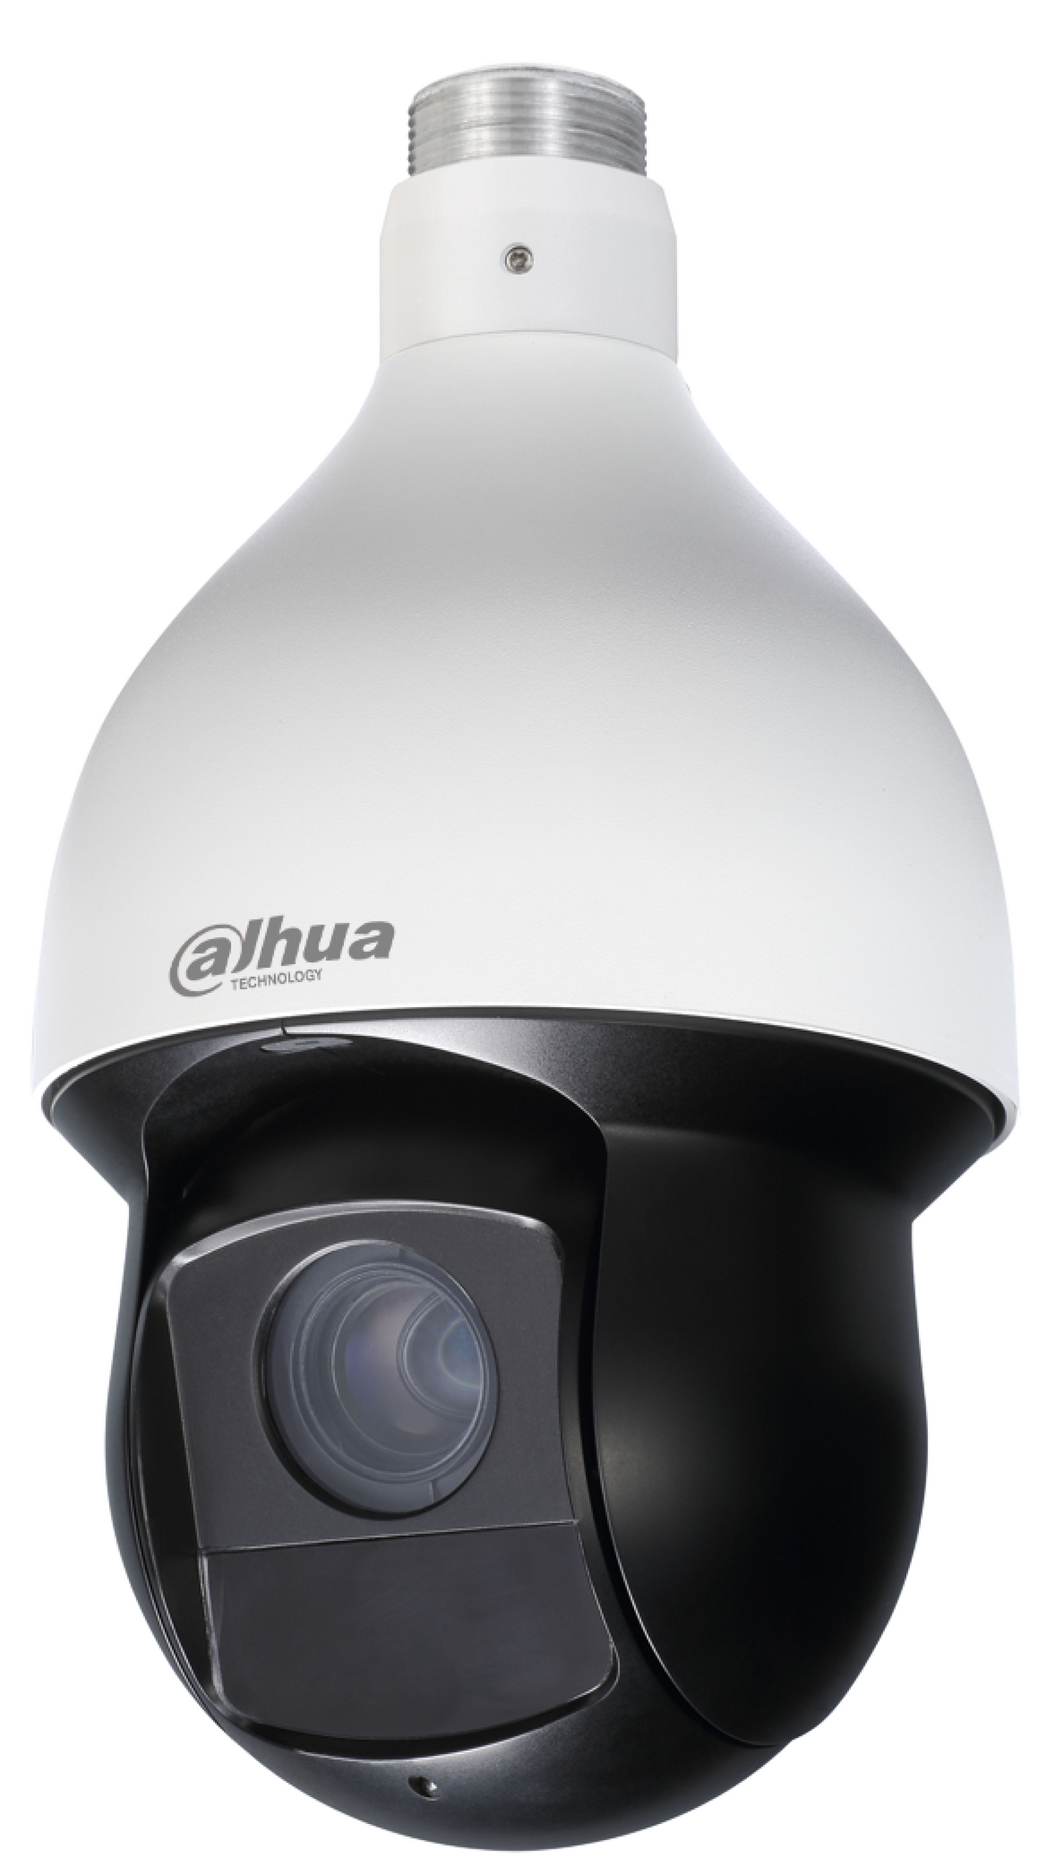 Dahua 4MP 30x IR PTZ Motorized Camera, 4.5mm~135mm Lens - CCTVMasters.com.au